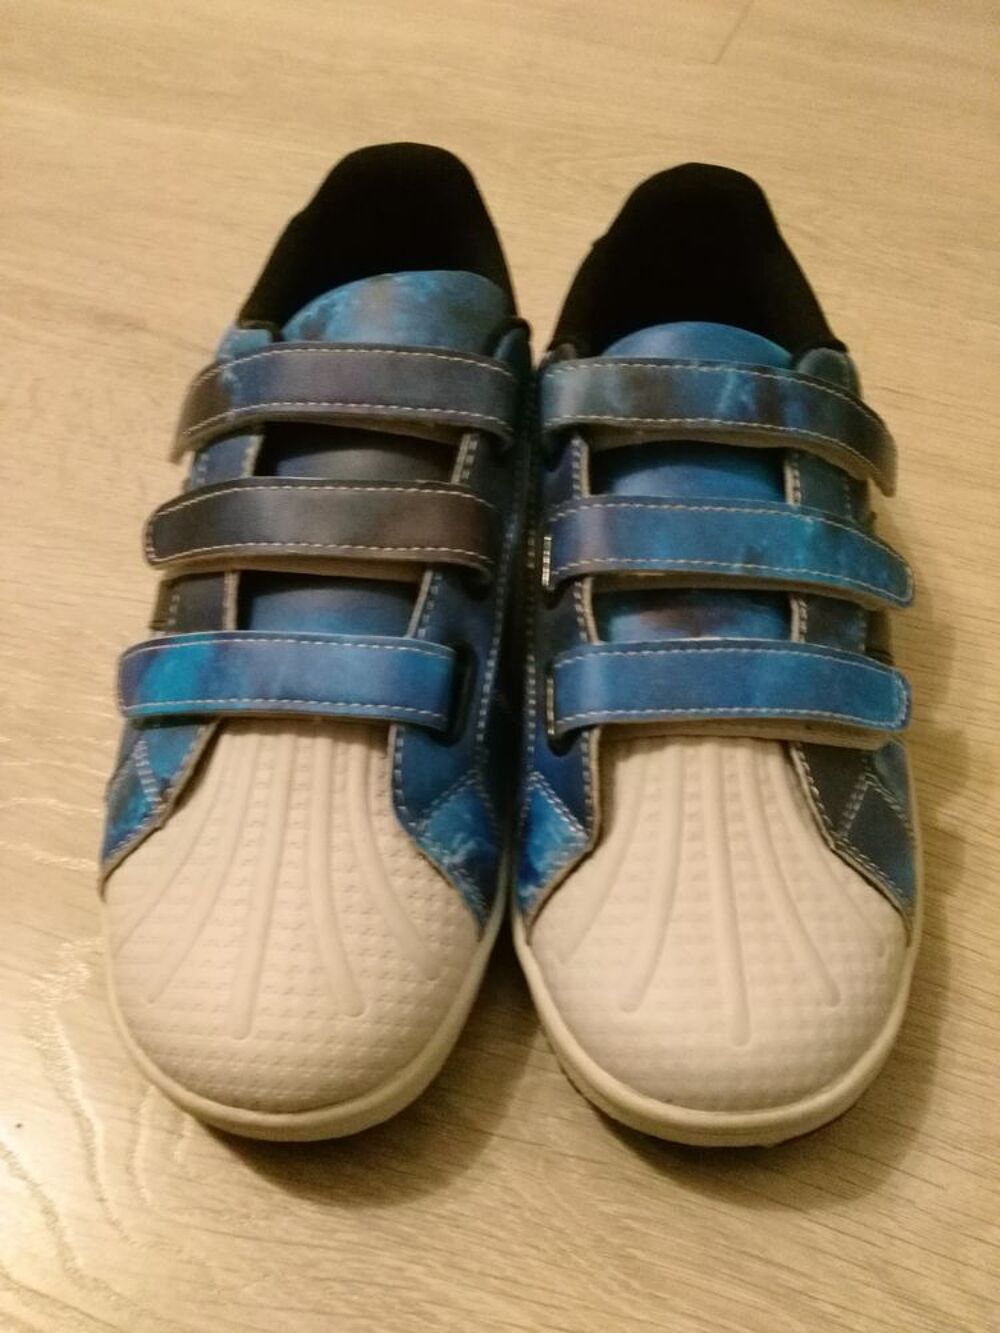 Chaussures en cuir bleue pour enfant T 39 Neuves
Chaussures